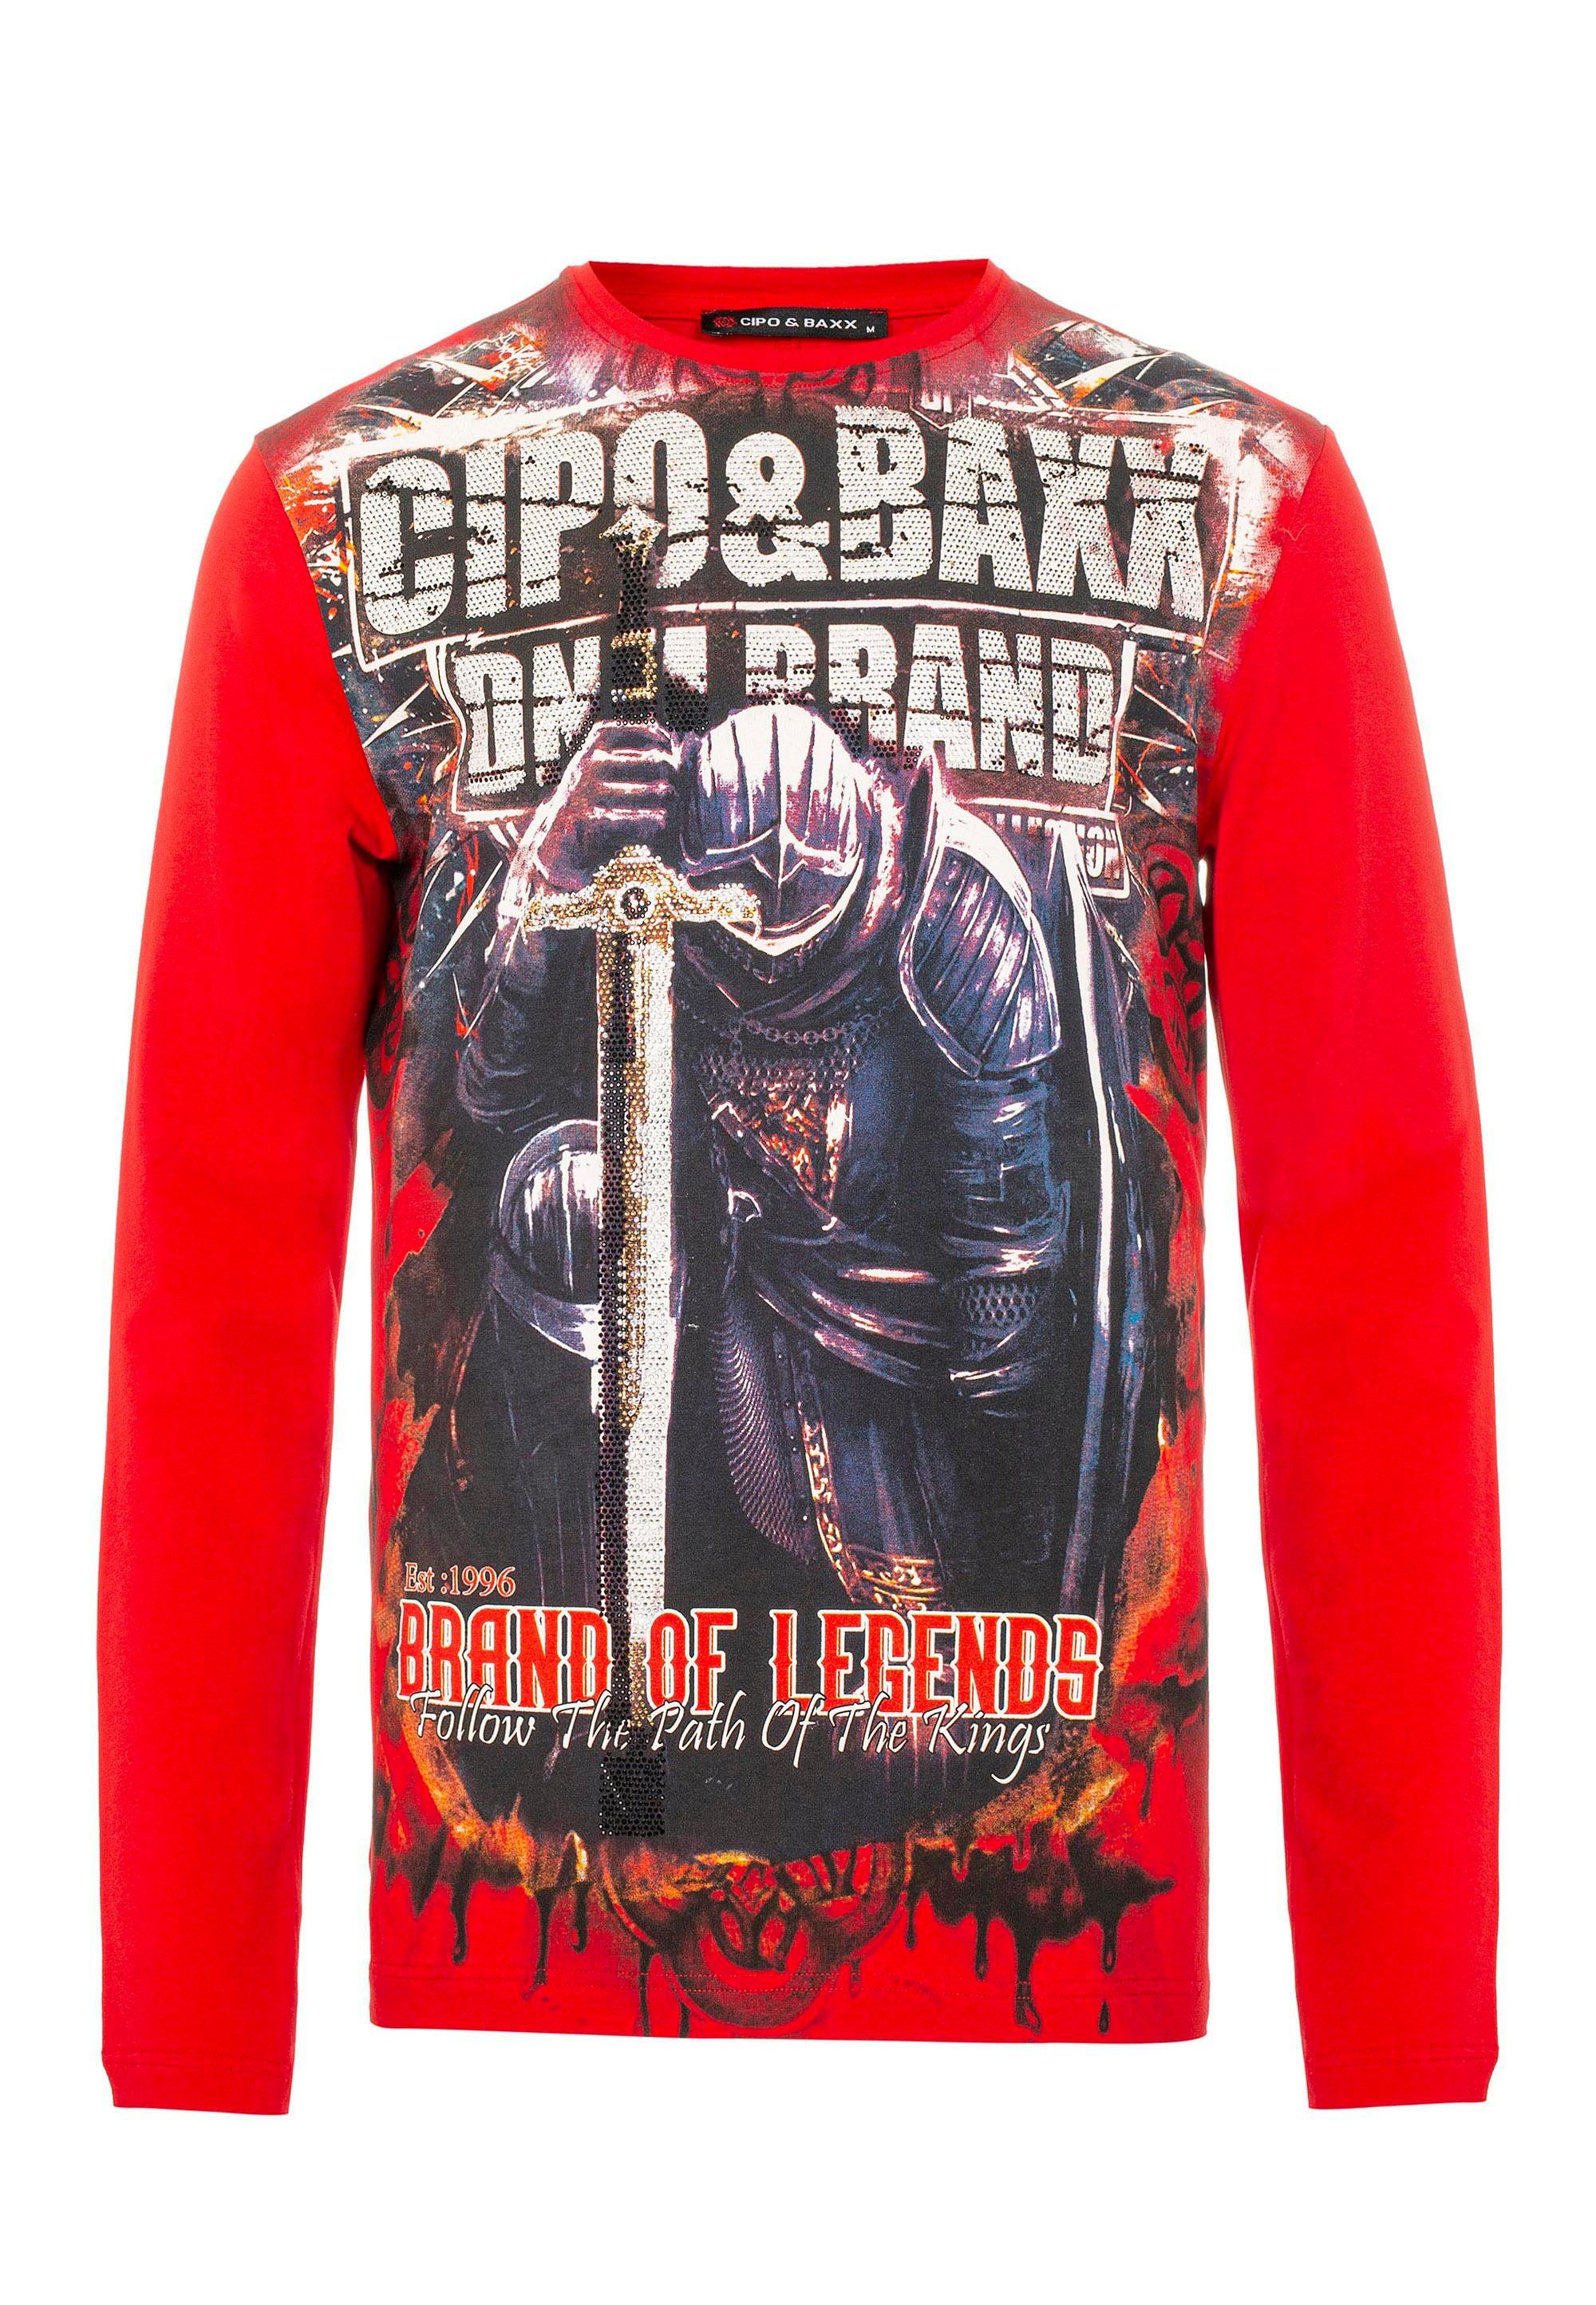 Cipo & Baxx Langarmshirt in coolem Look rot-schwarz